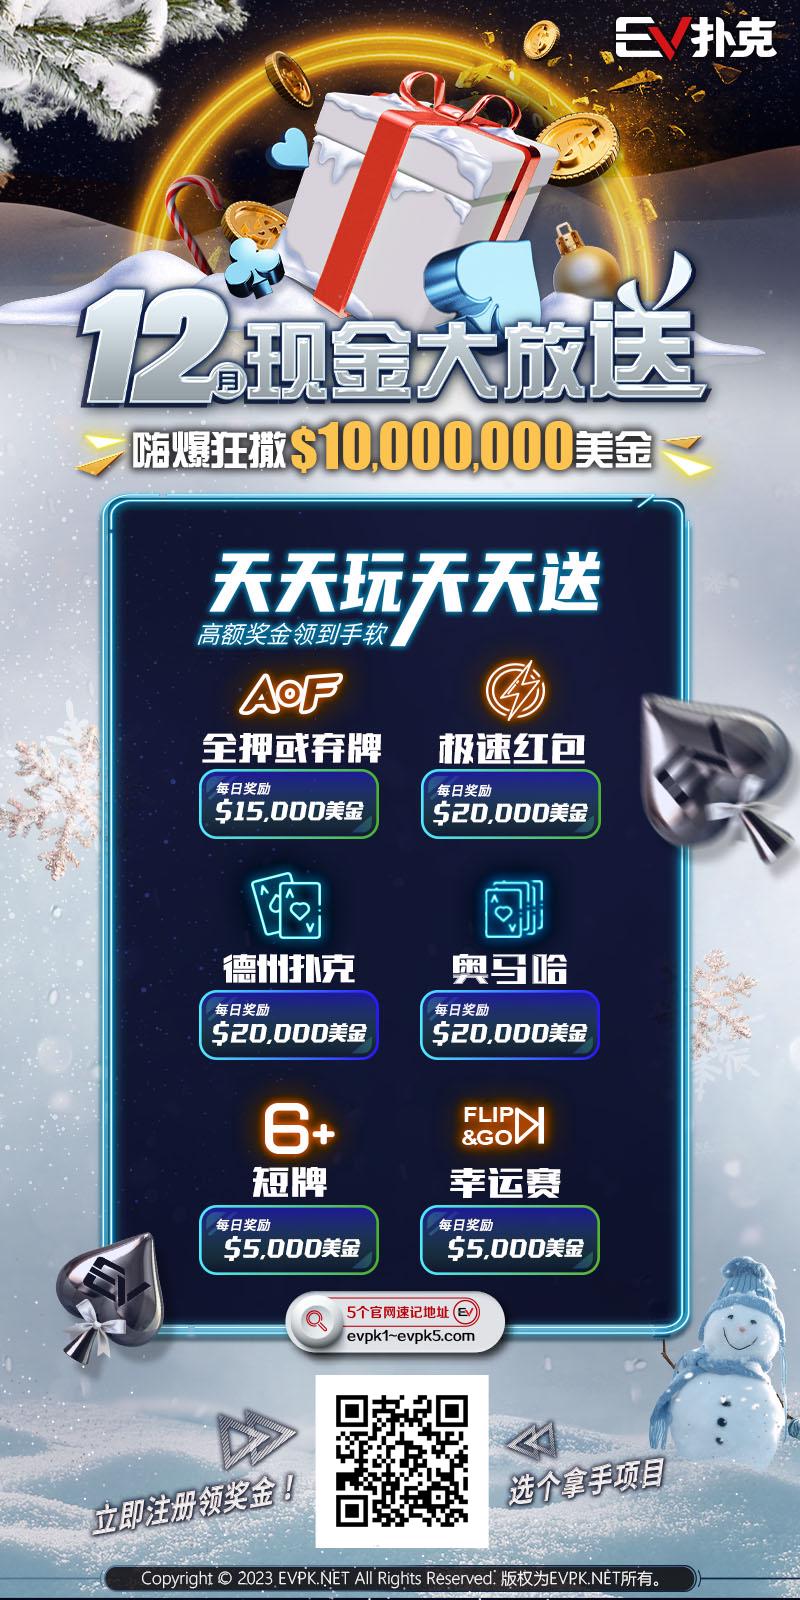 赛事公告｜中国安徽智力扑克大赛（IPG）启动仪式正式定档